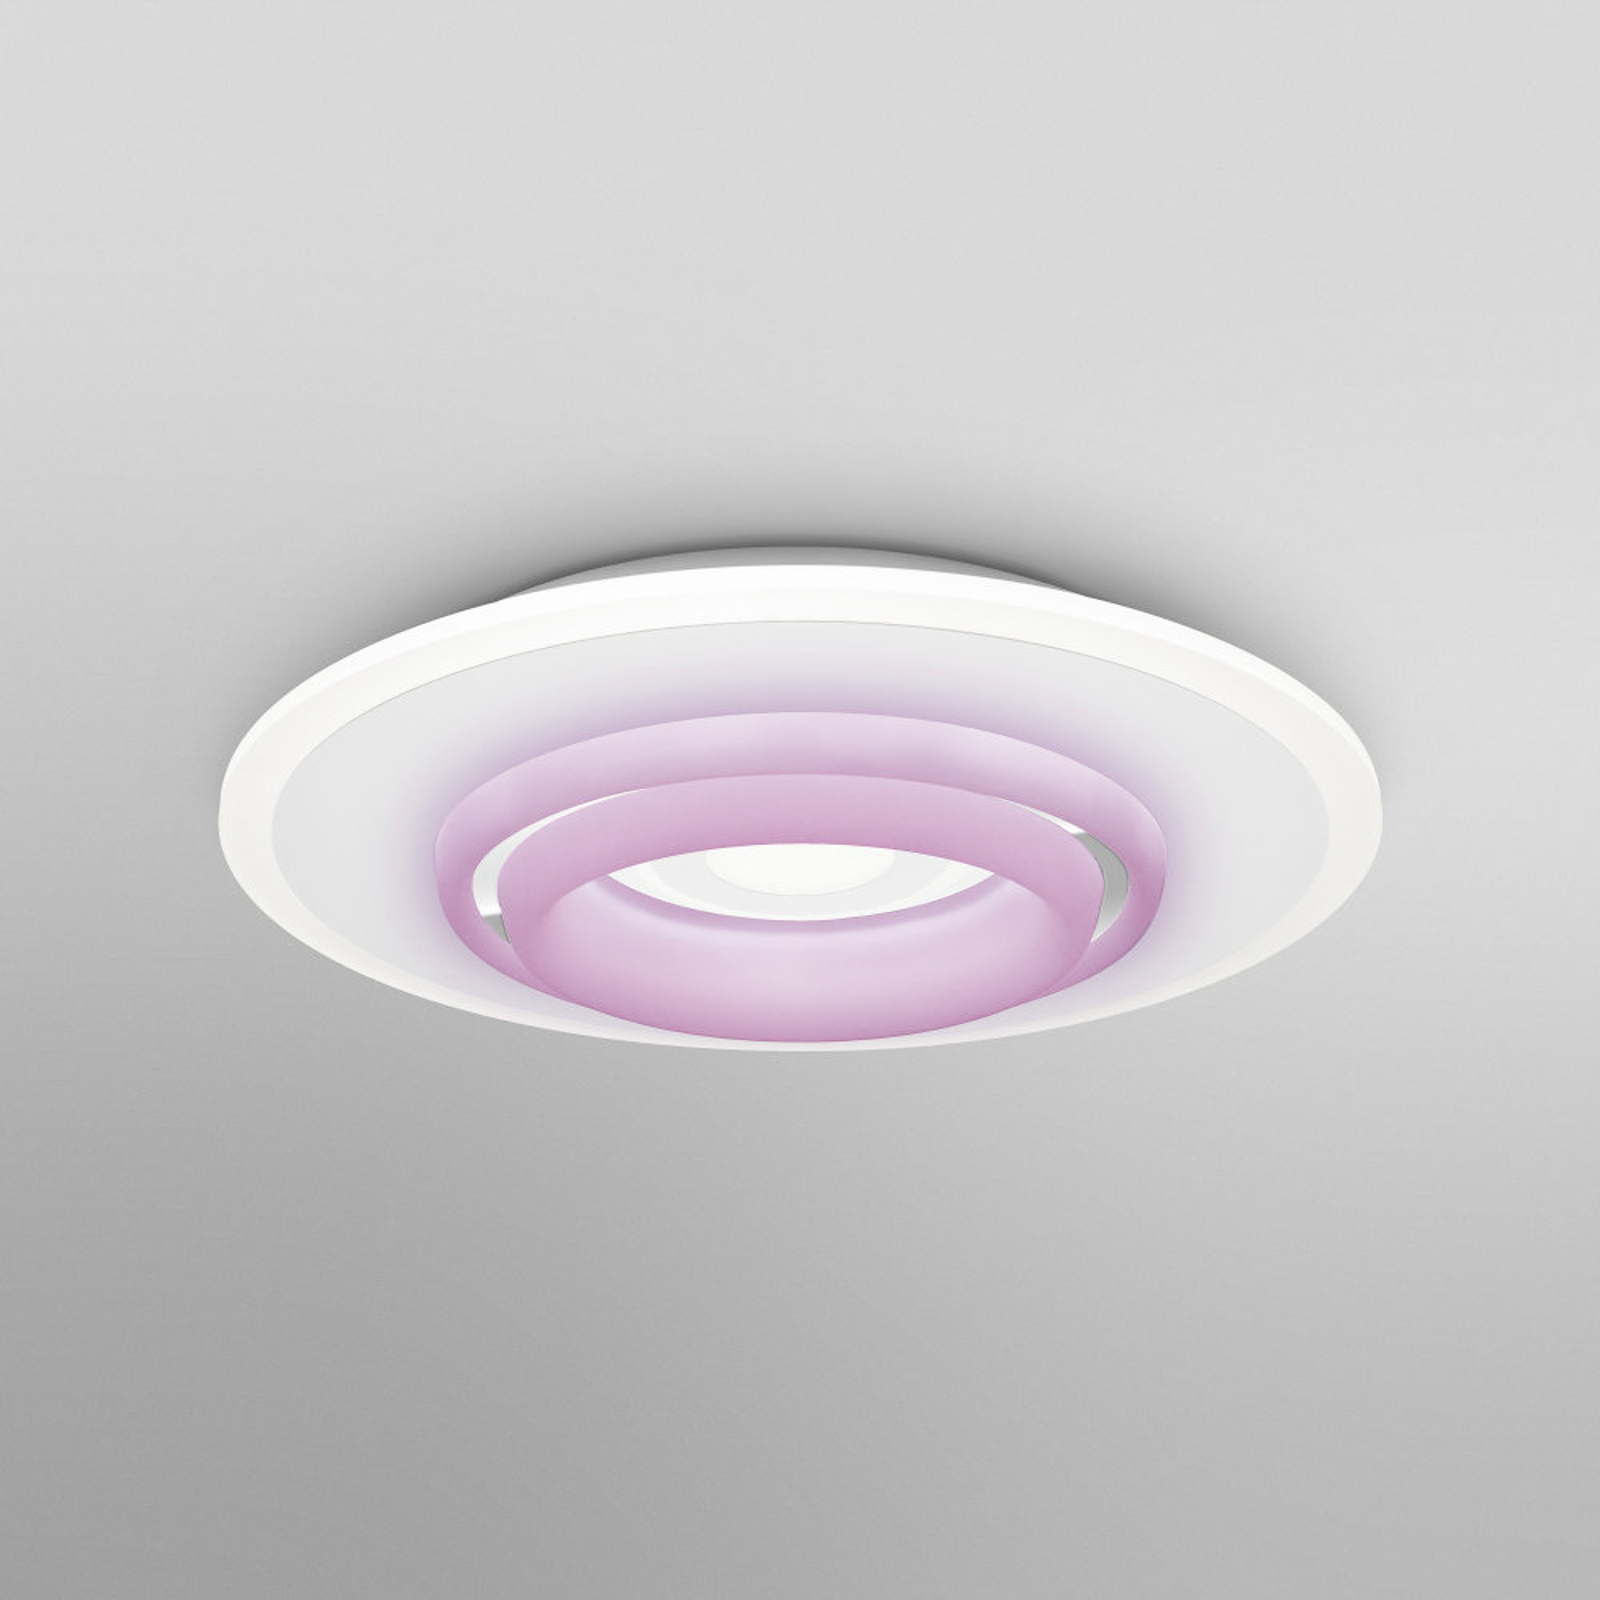 LEDVANCE SMART+ WiFi Orbis Rumor LED-taklampe